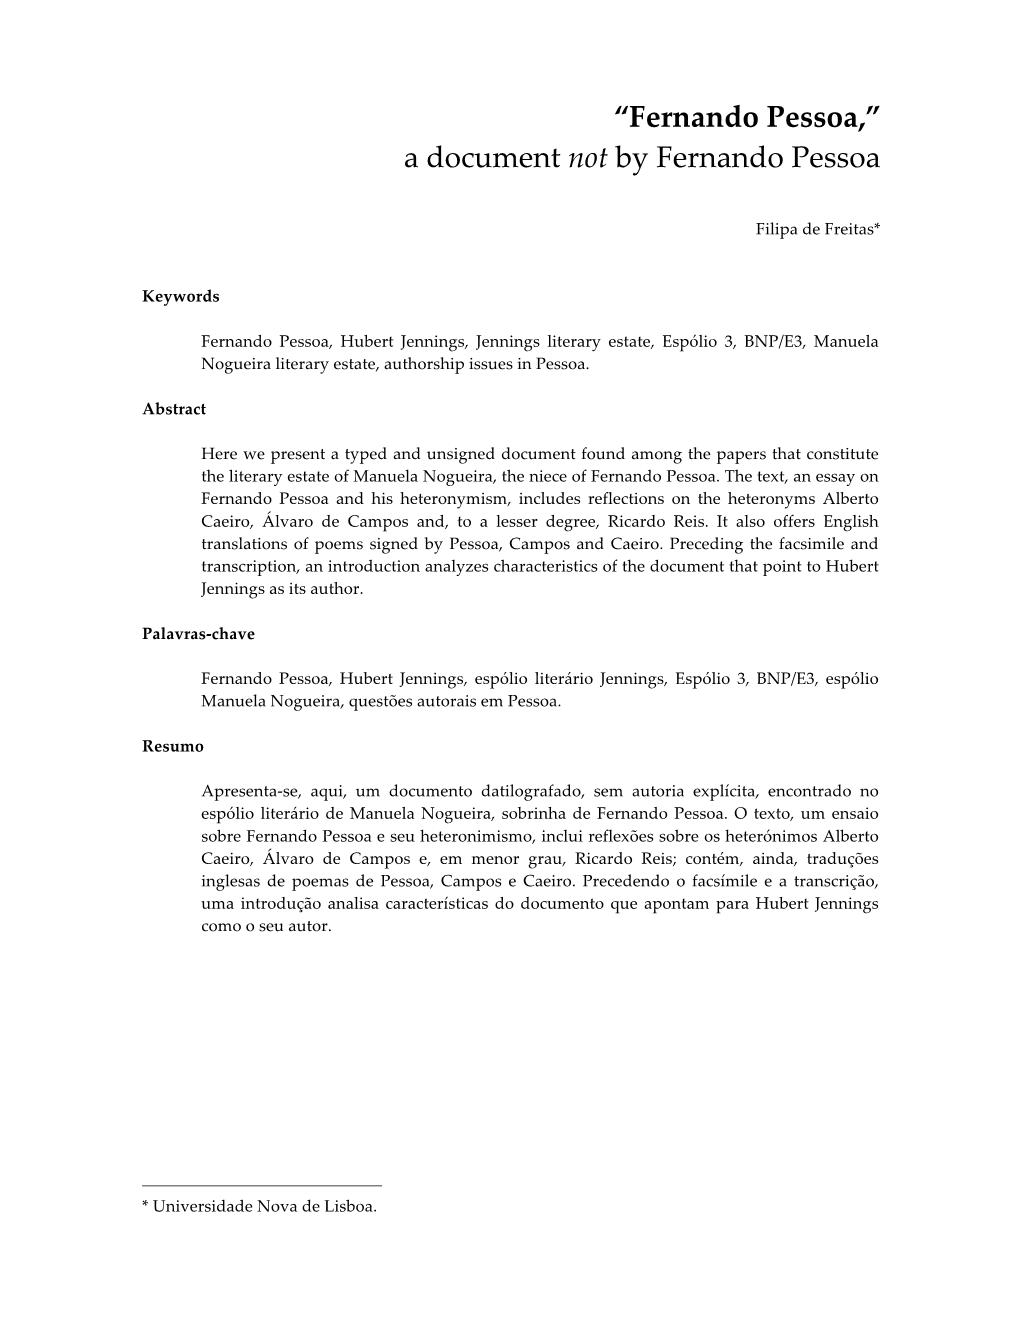 A Document Not by Fernando Pessoa